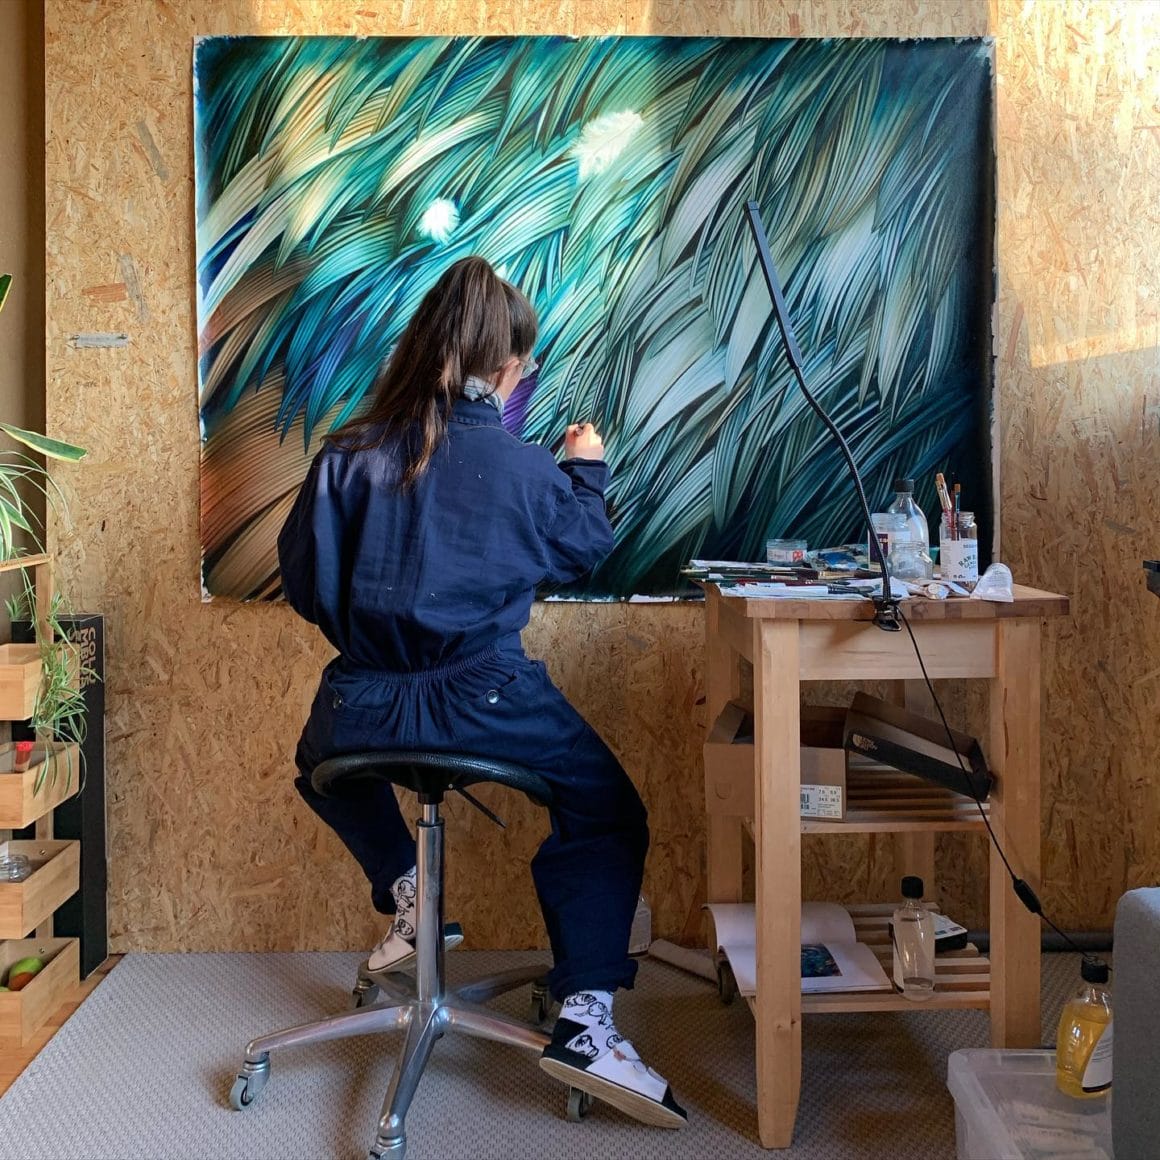 Adèle est en pleine création dans son atelier. Elle est en train de peindre des plumes vertes, bleues et oranges